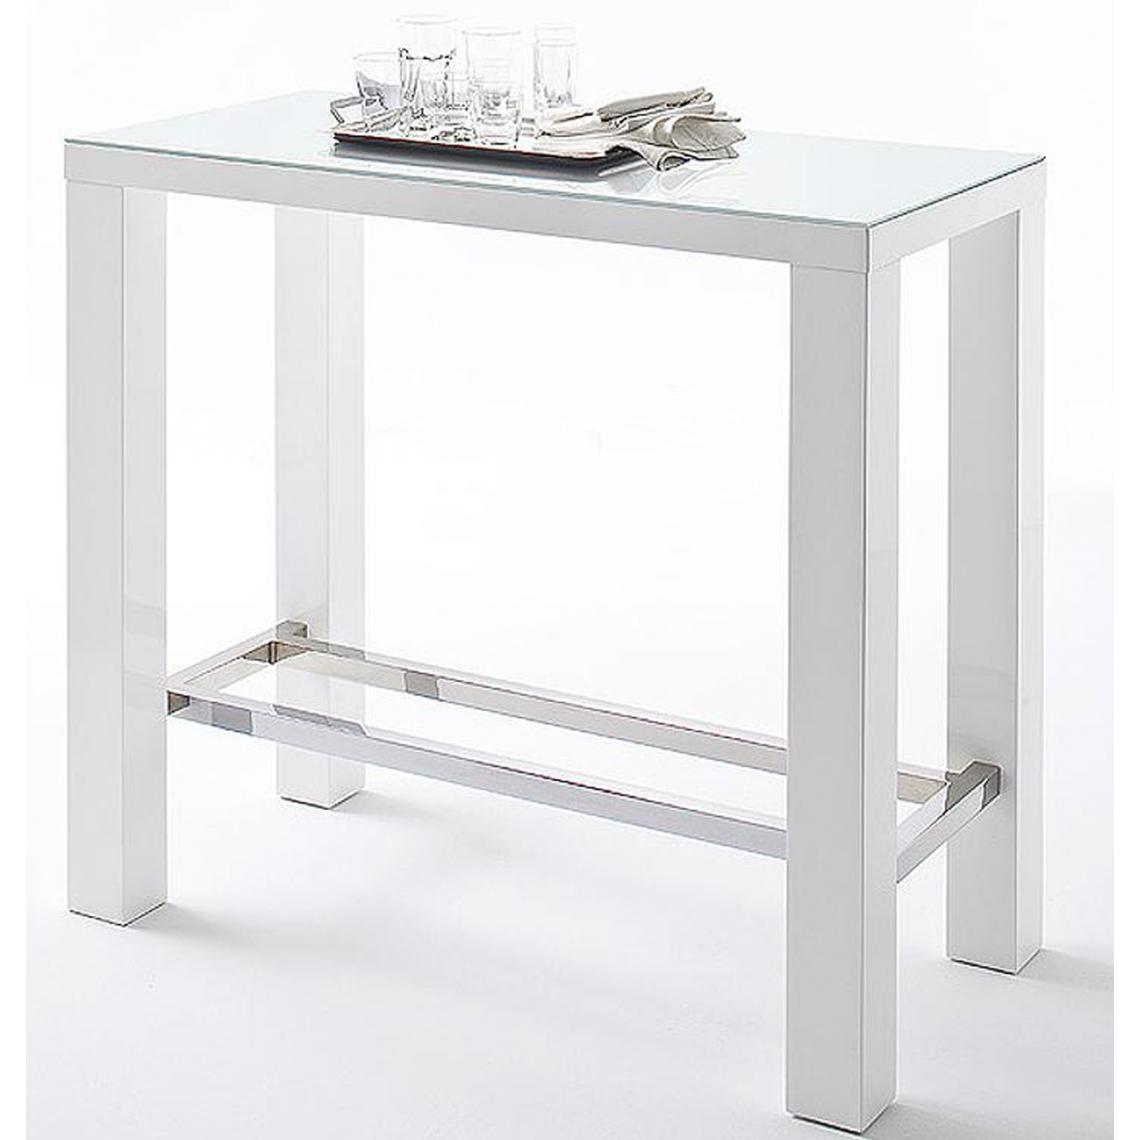 Pegane - Table de bar rectangulaire en métal et verre blanc brillant - L.120 x H.107 x P.60 cm - Tables à manger